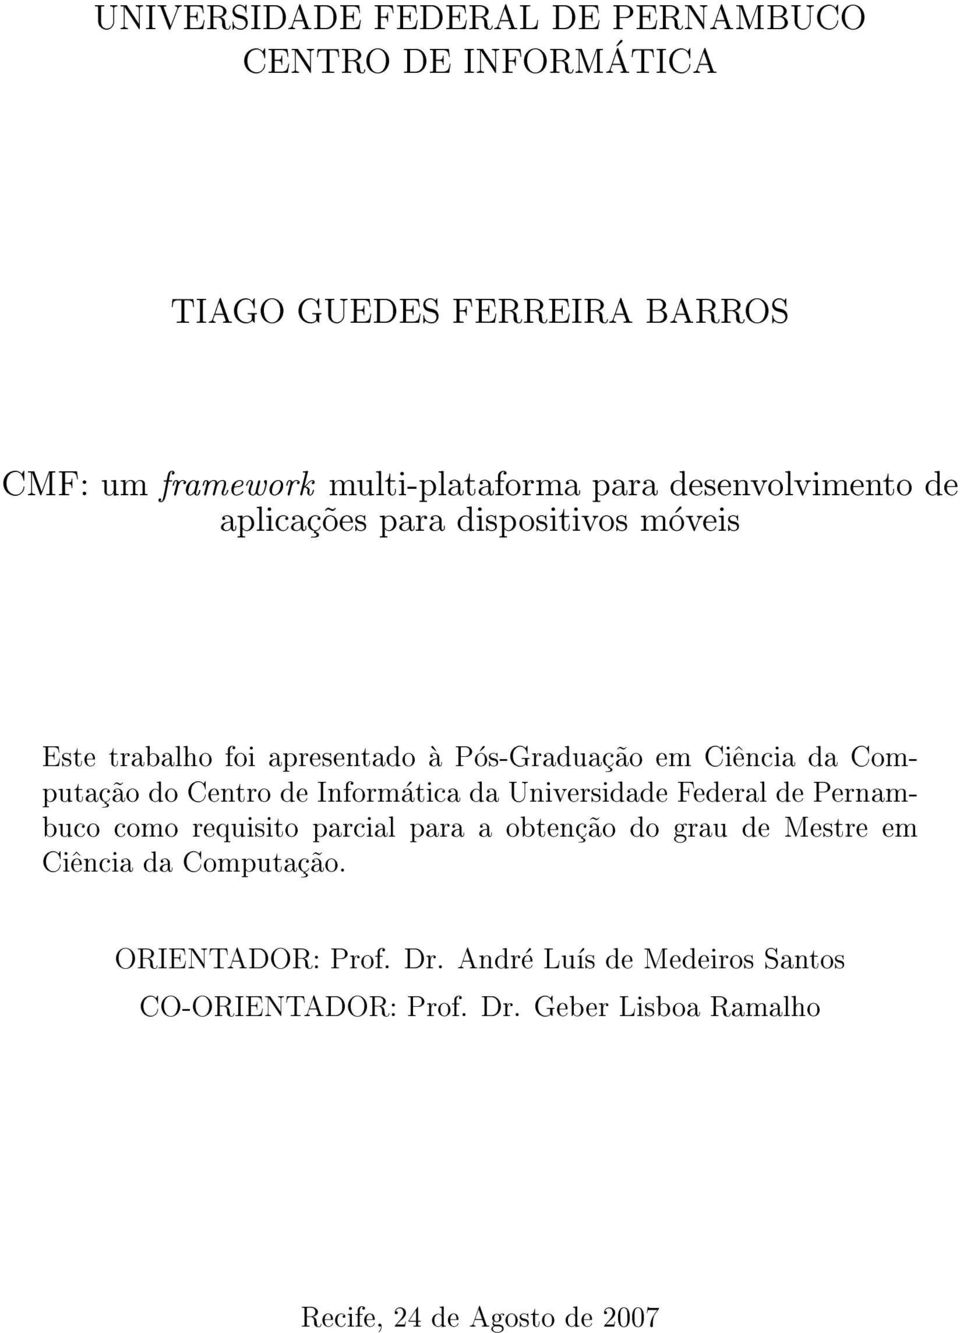 Centro de Informatica da Universidade Federal de Pernambuco como requisito parcial para a obtenc~ao do grau de Mestre em Ci^encia da